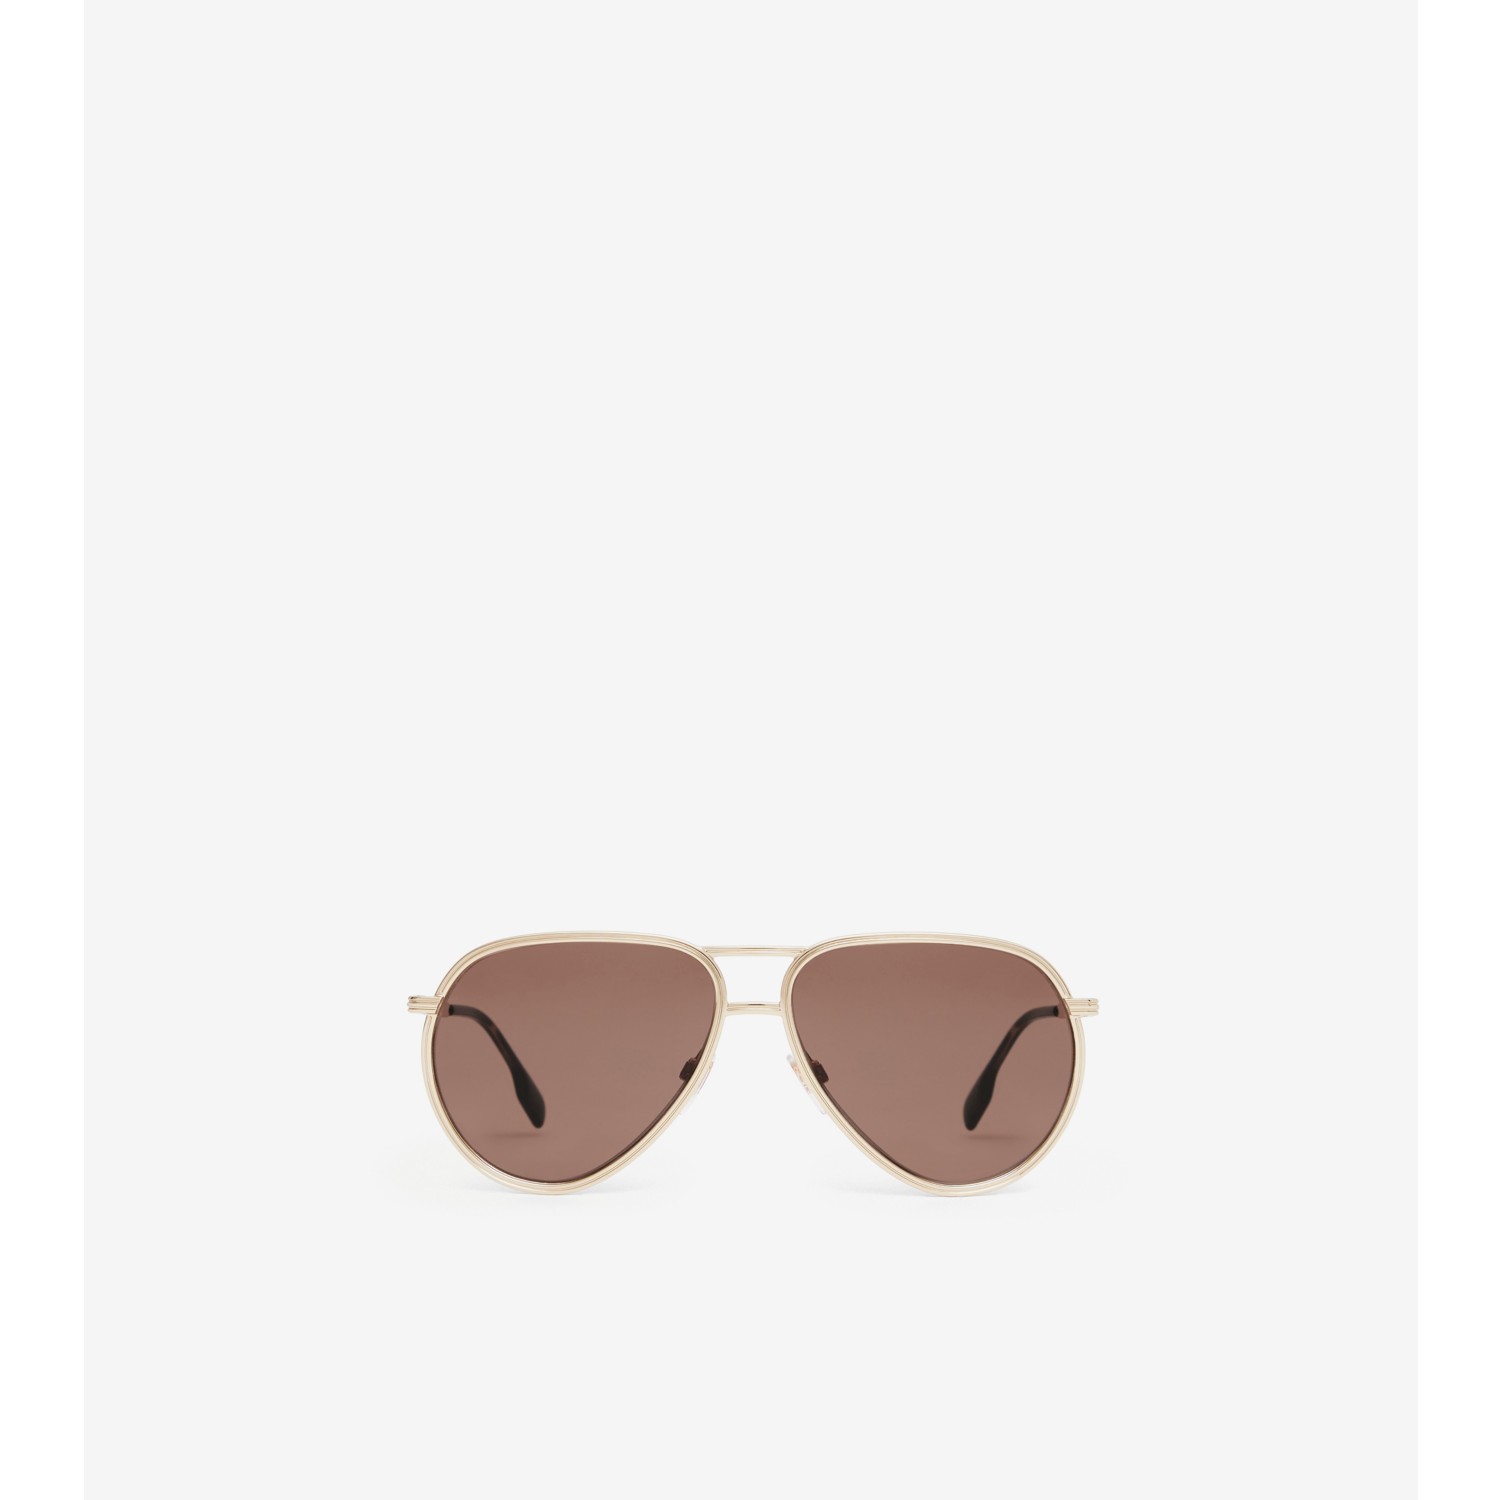 Pilot Sunglasses in Dark Brown - Men